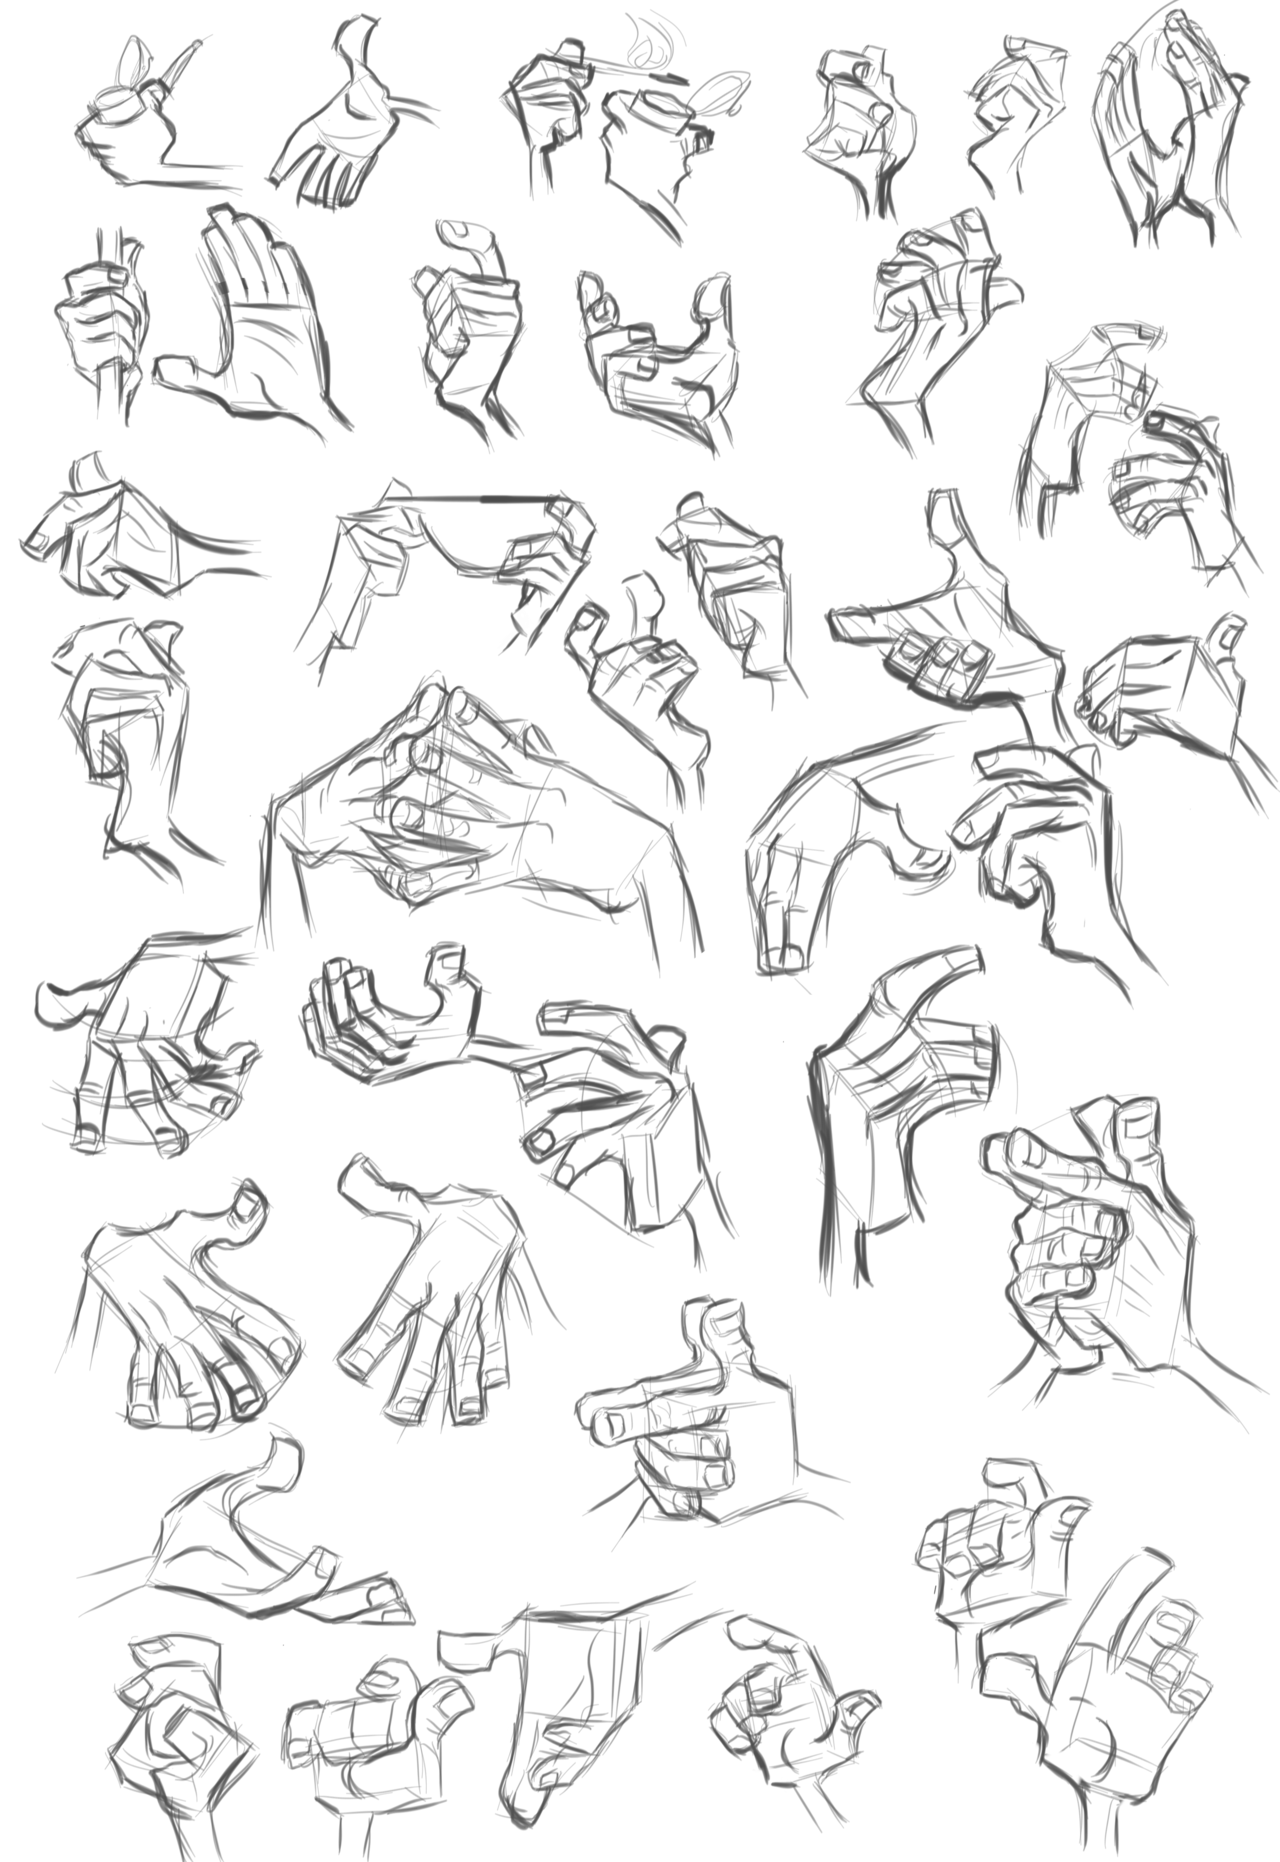 Референсы рук рисунок. Кисти рук референсы. Стилизованная кисть руки. Позы рук для рисования. Руки референсы для рисования.